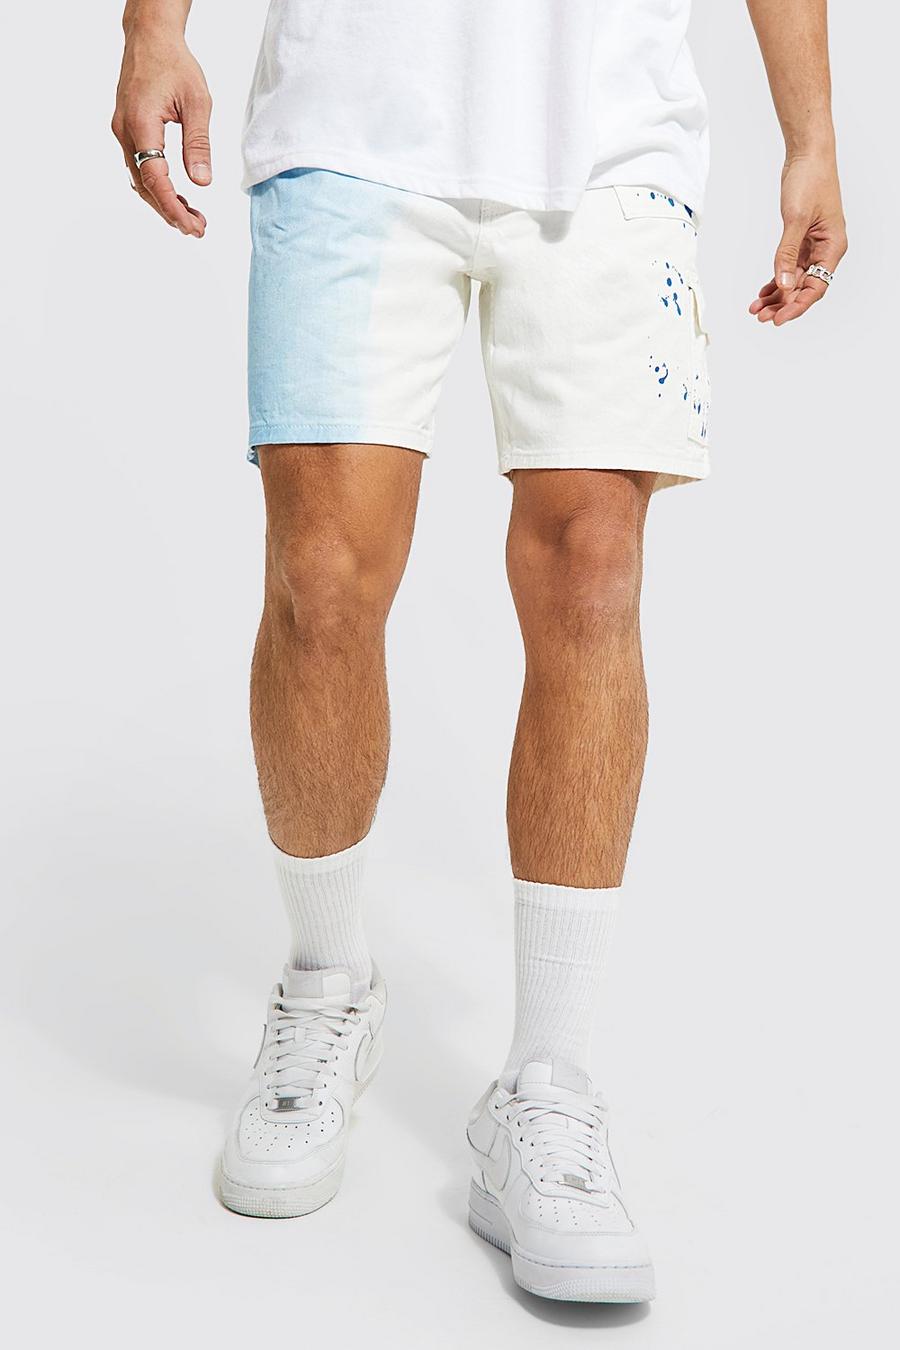 Lockere, gespleißte Shorts mit Farbspritzern, White weiß image number 1